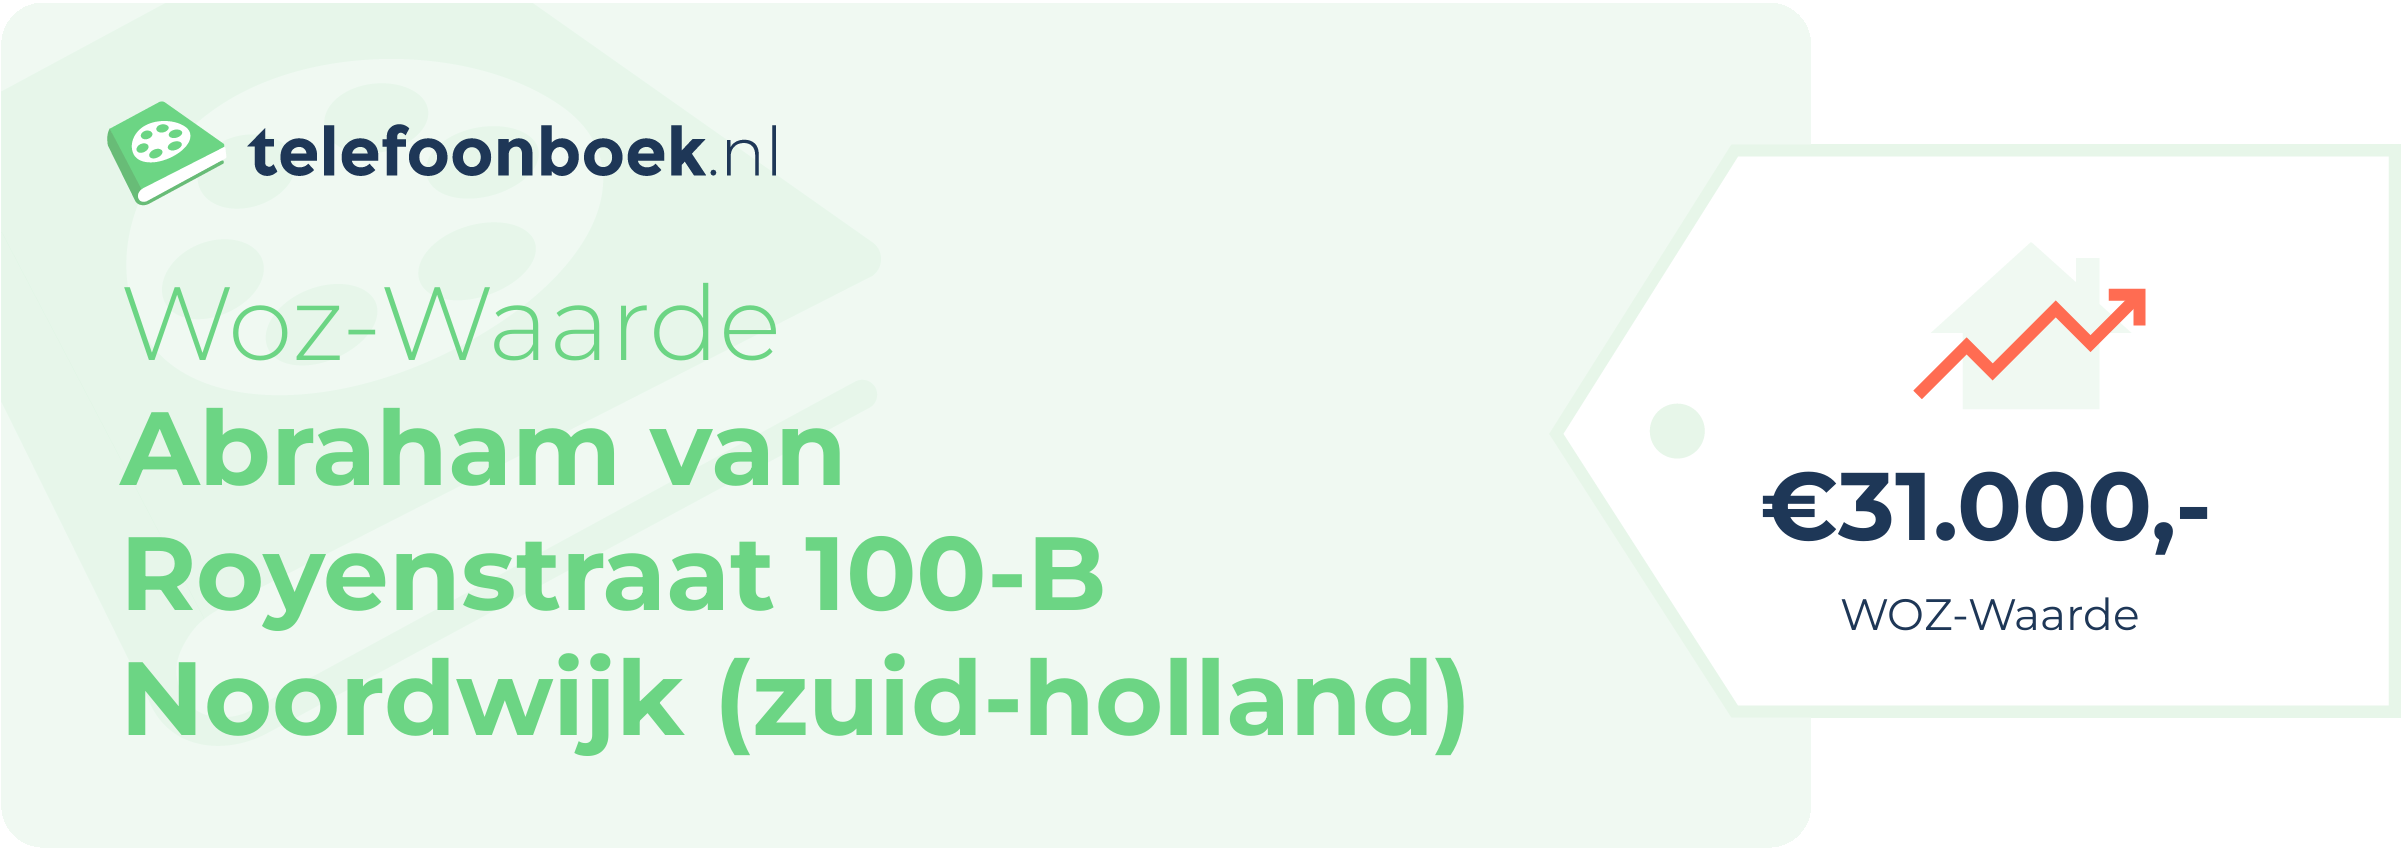 WOZ-waarde Abraham Van Royenstraat 100-B Noordwijk (Zuid-Holland)